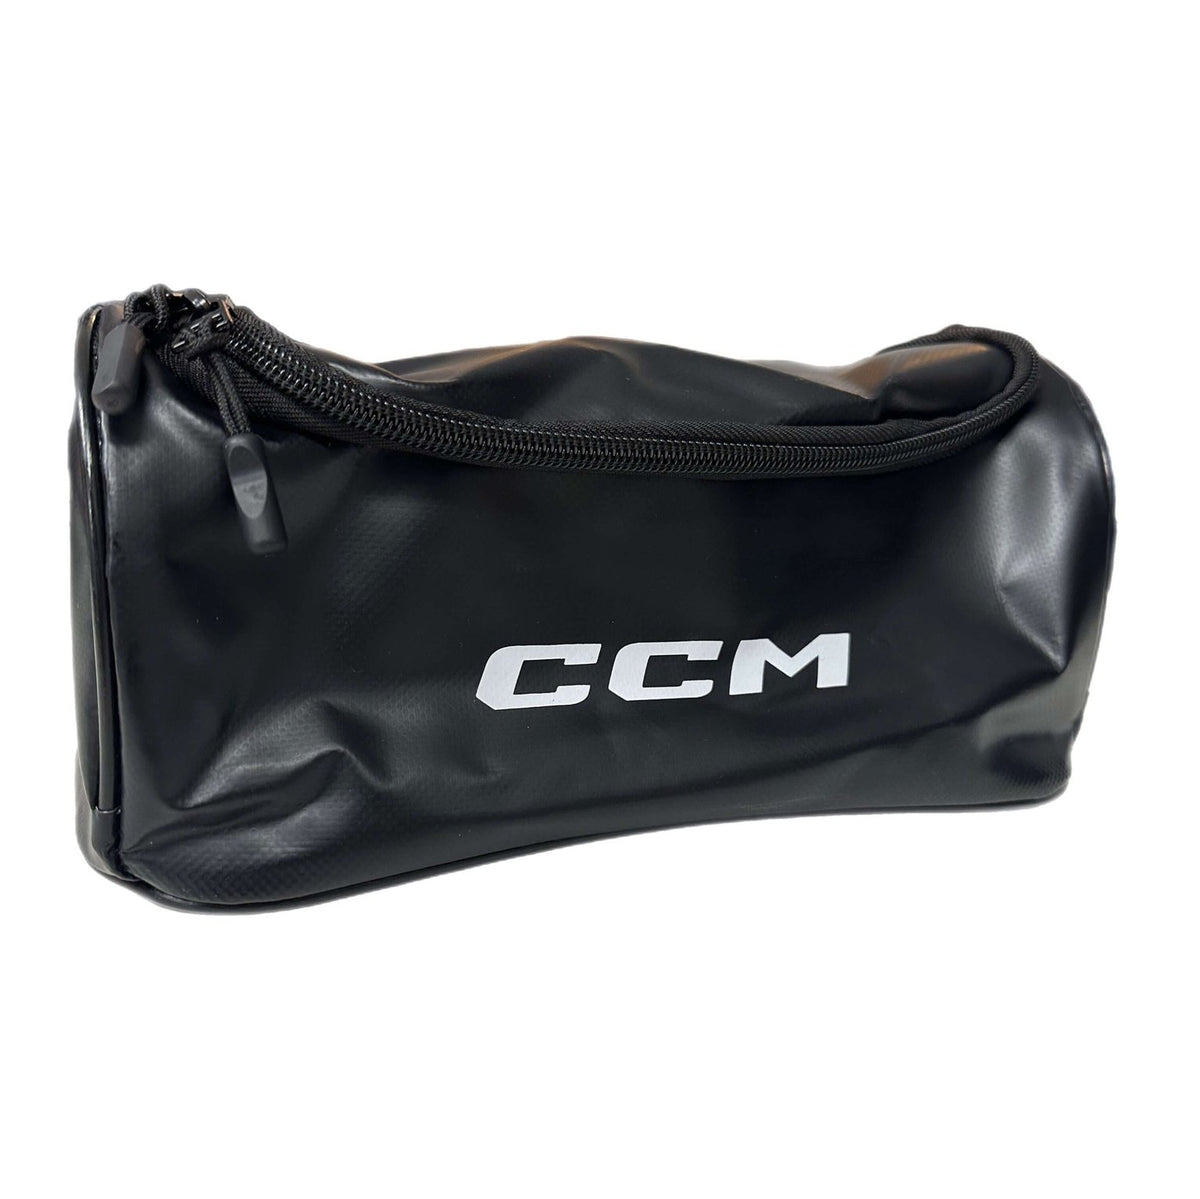 CCM Shower Bag